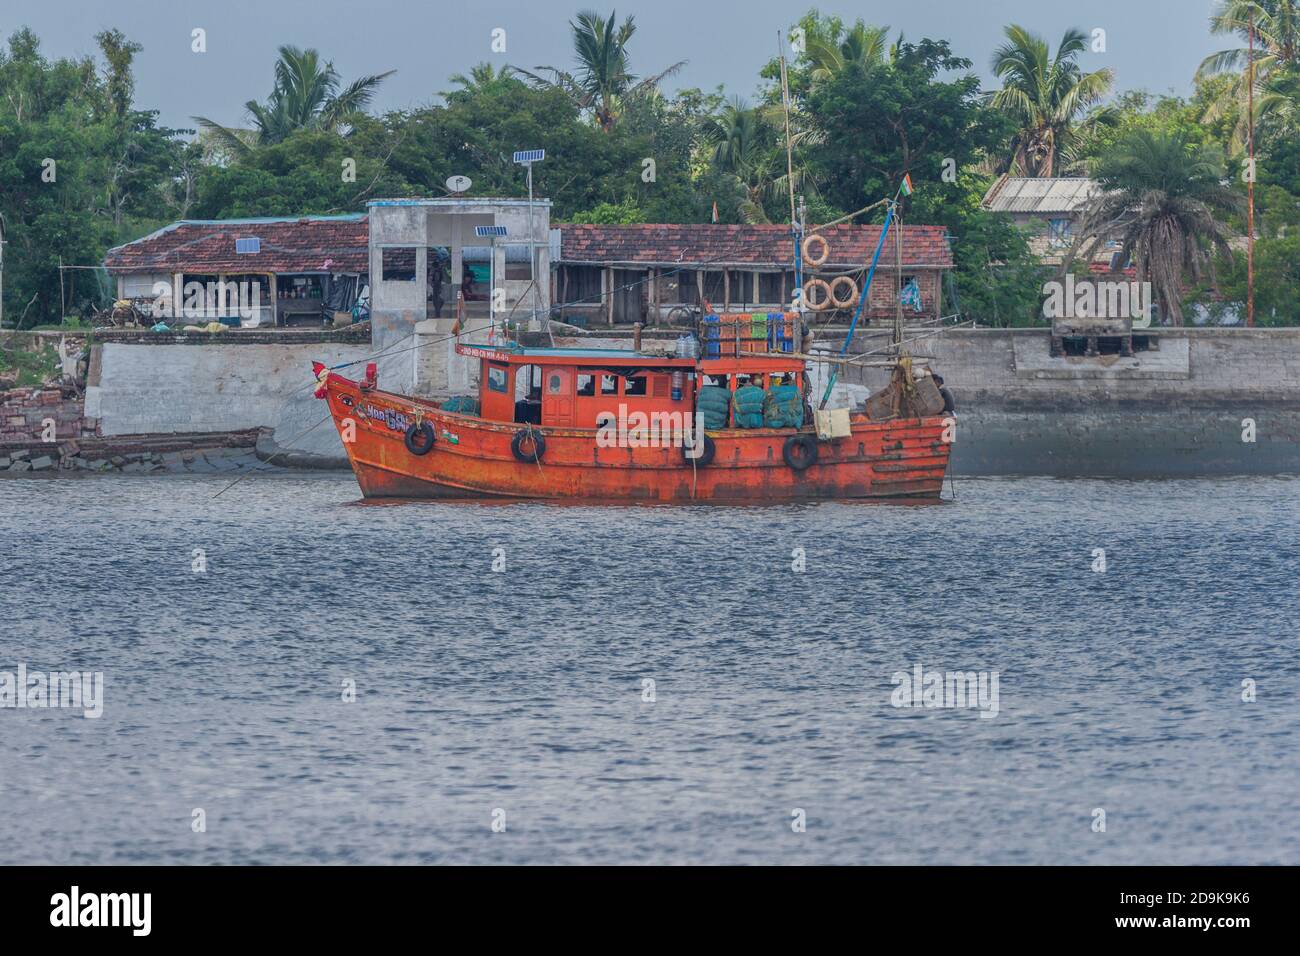 Orangefarbenes Boot, das für Angelaktivitäten in der Tiefsee verwendet wird, verankert in der Nähe einer Dorfinsel in Sundarban, Westbengalen, Indien am 16. Oktober 2020 Stockfoto